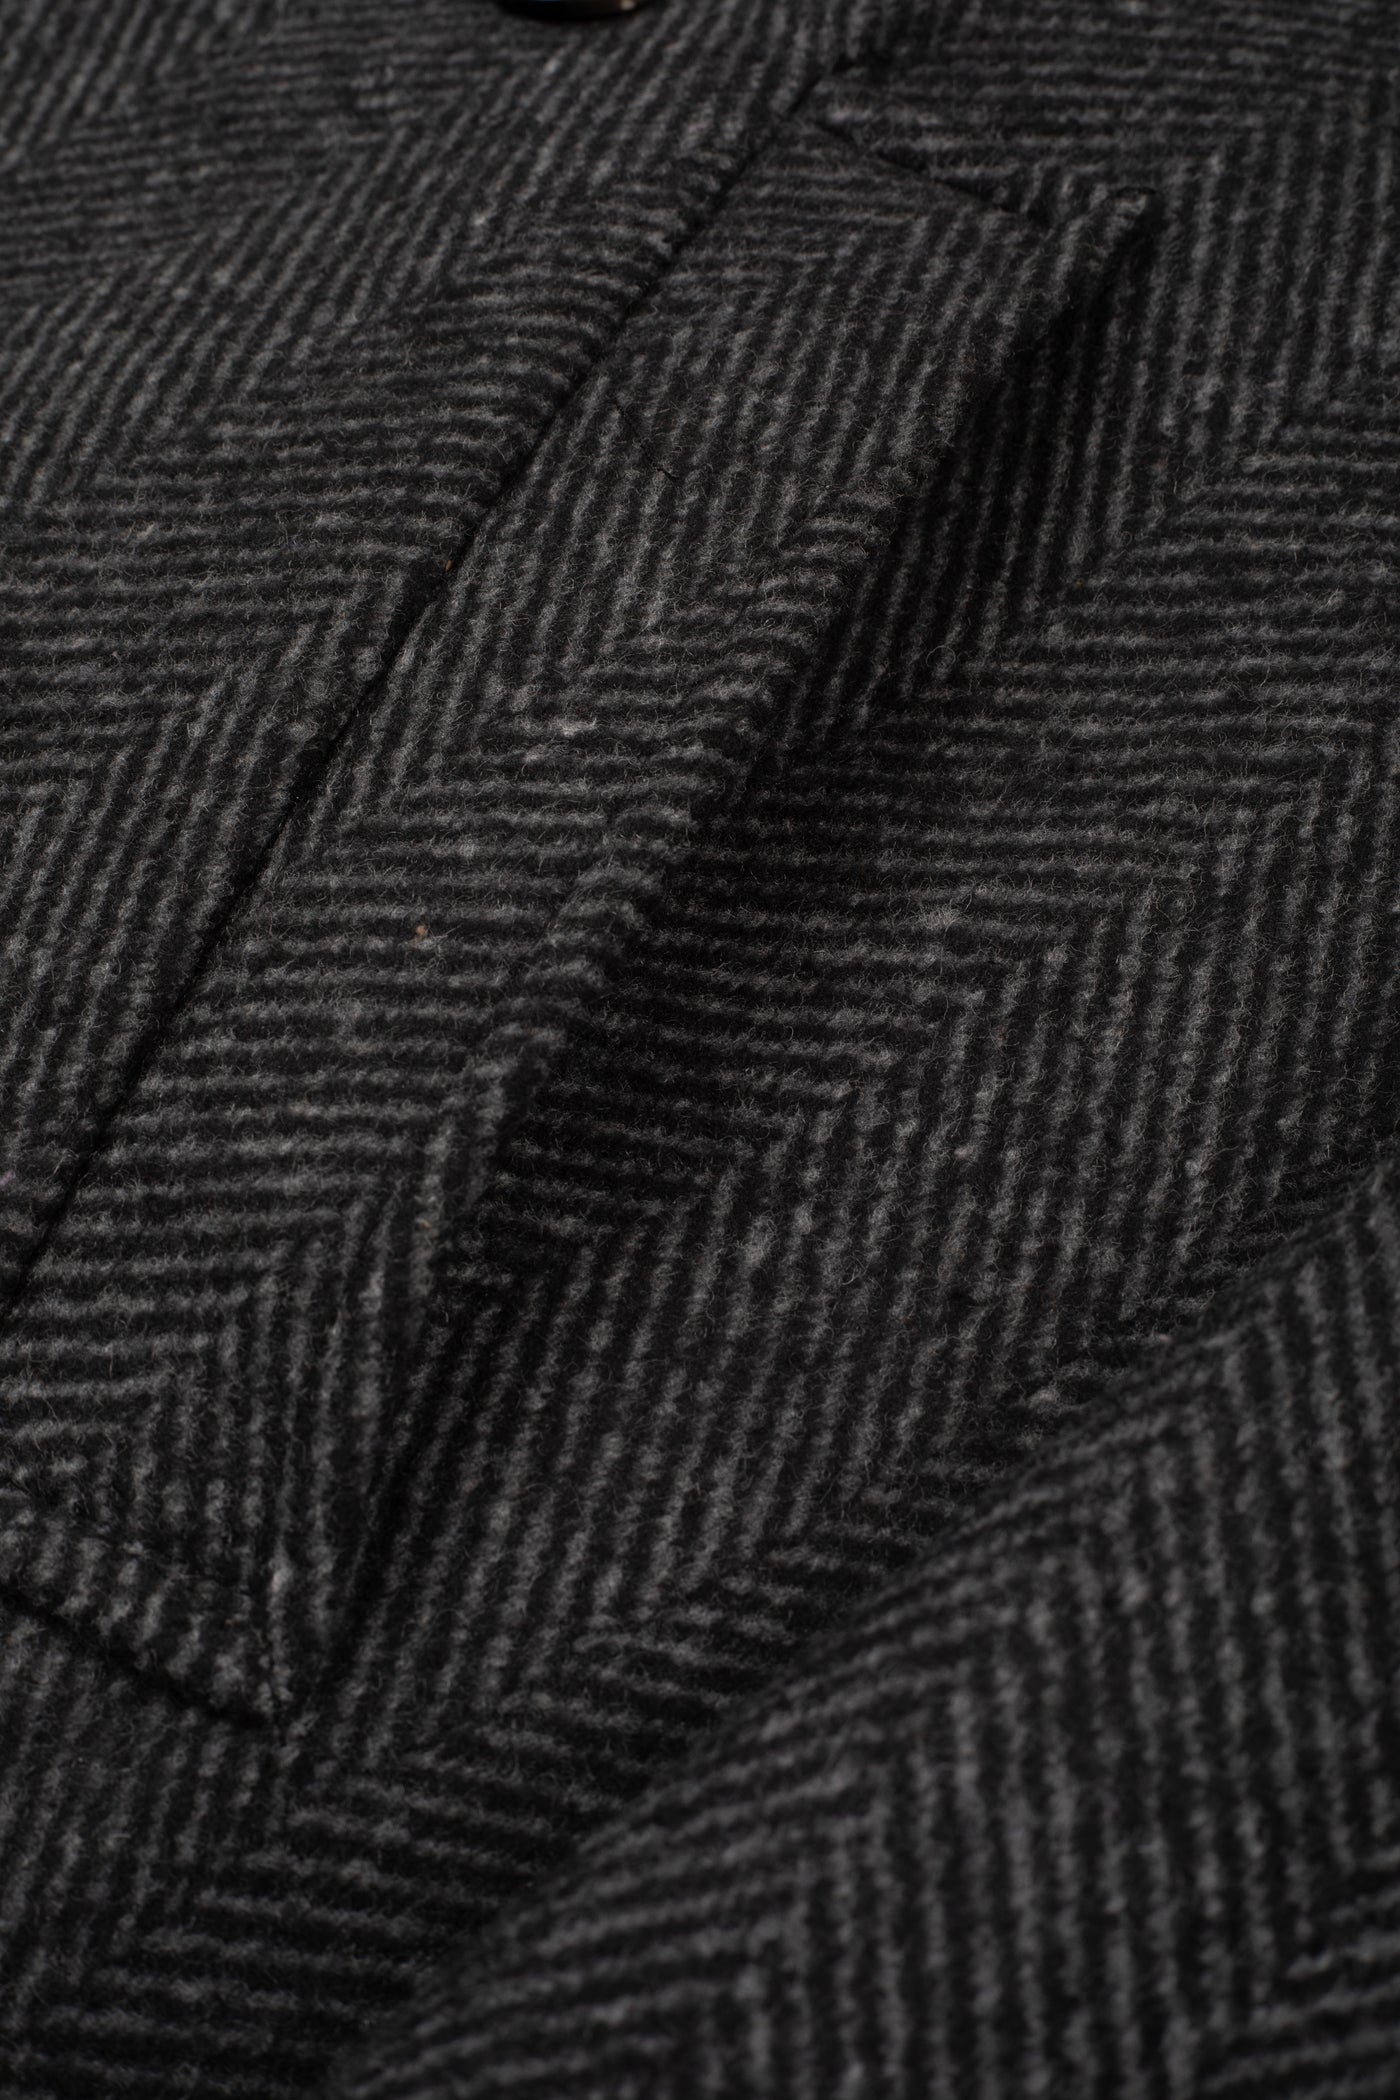 Charcoal Black Double-Breasted Herringbone Coat